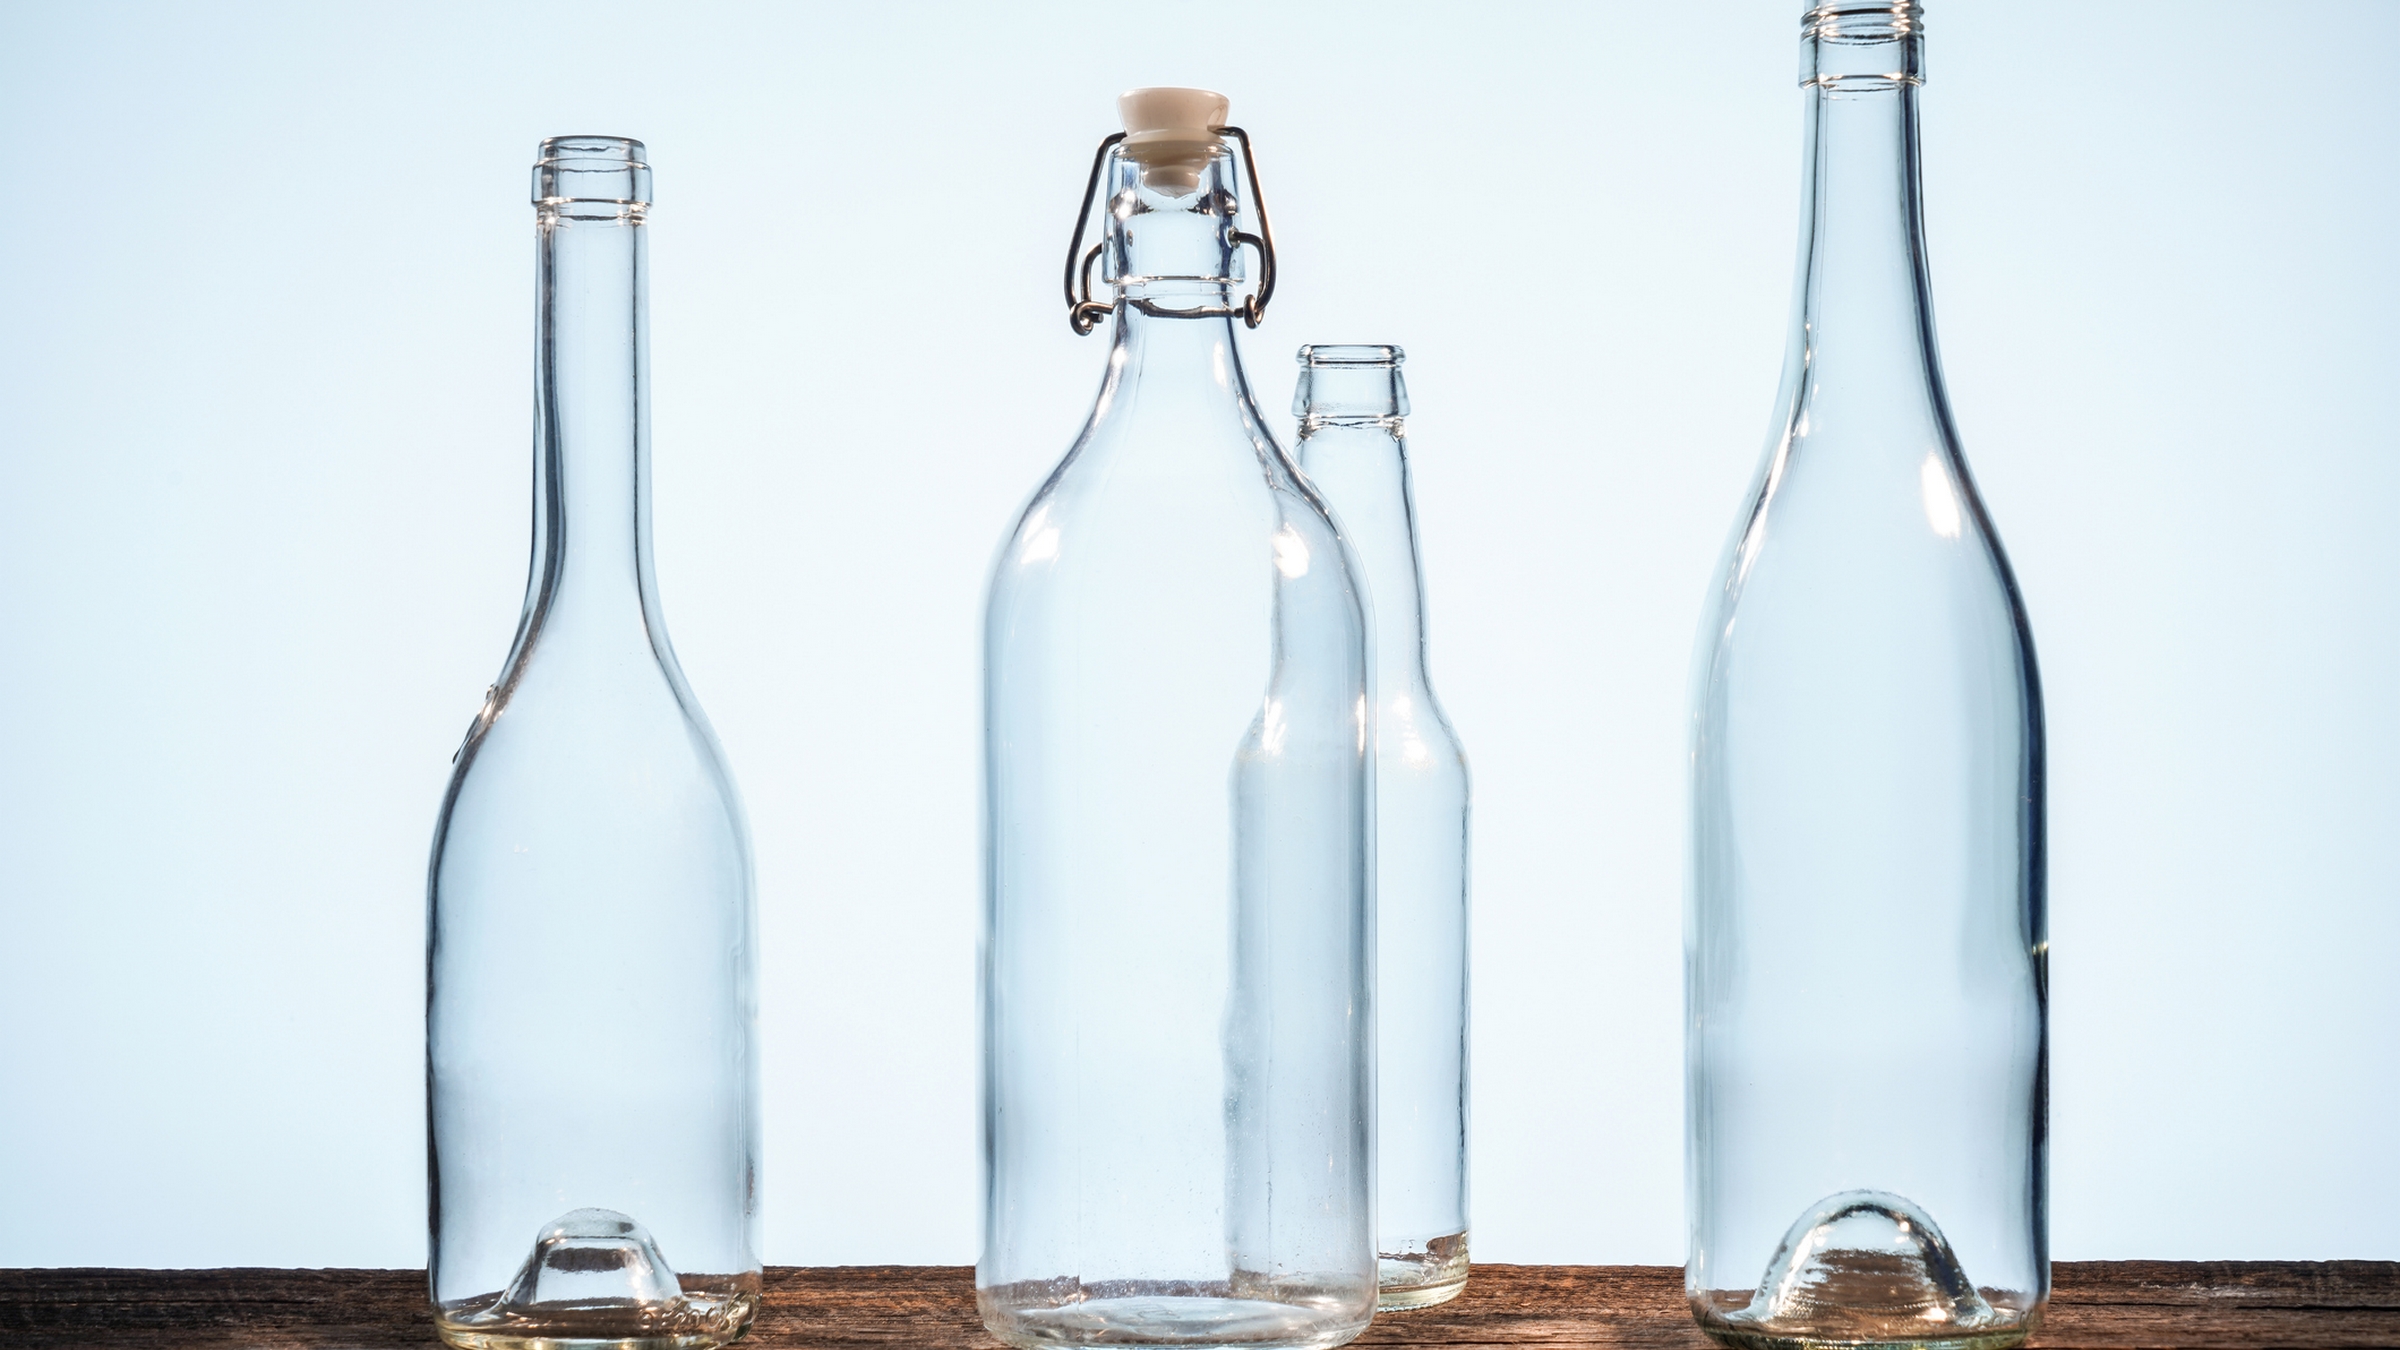 Trucos caseros: La manera correcta de limpiar por dentro las botellas de  vidrio, remedios, hacks, nnda nnni, RESPUESTAS